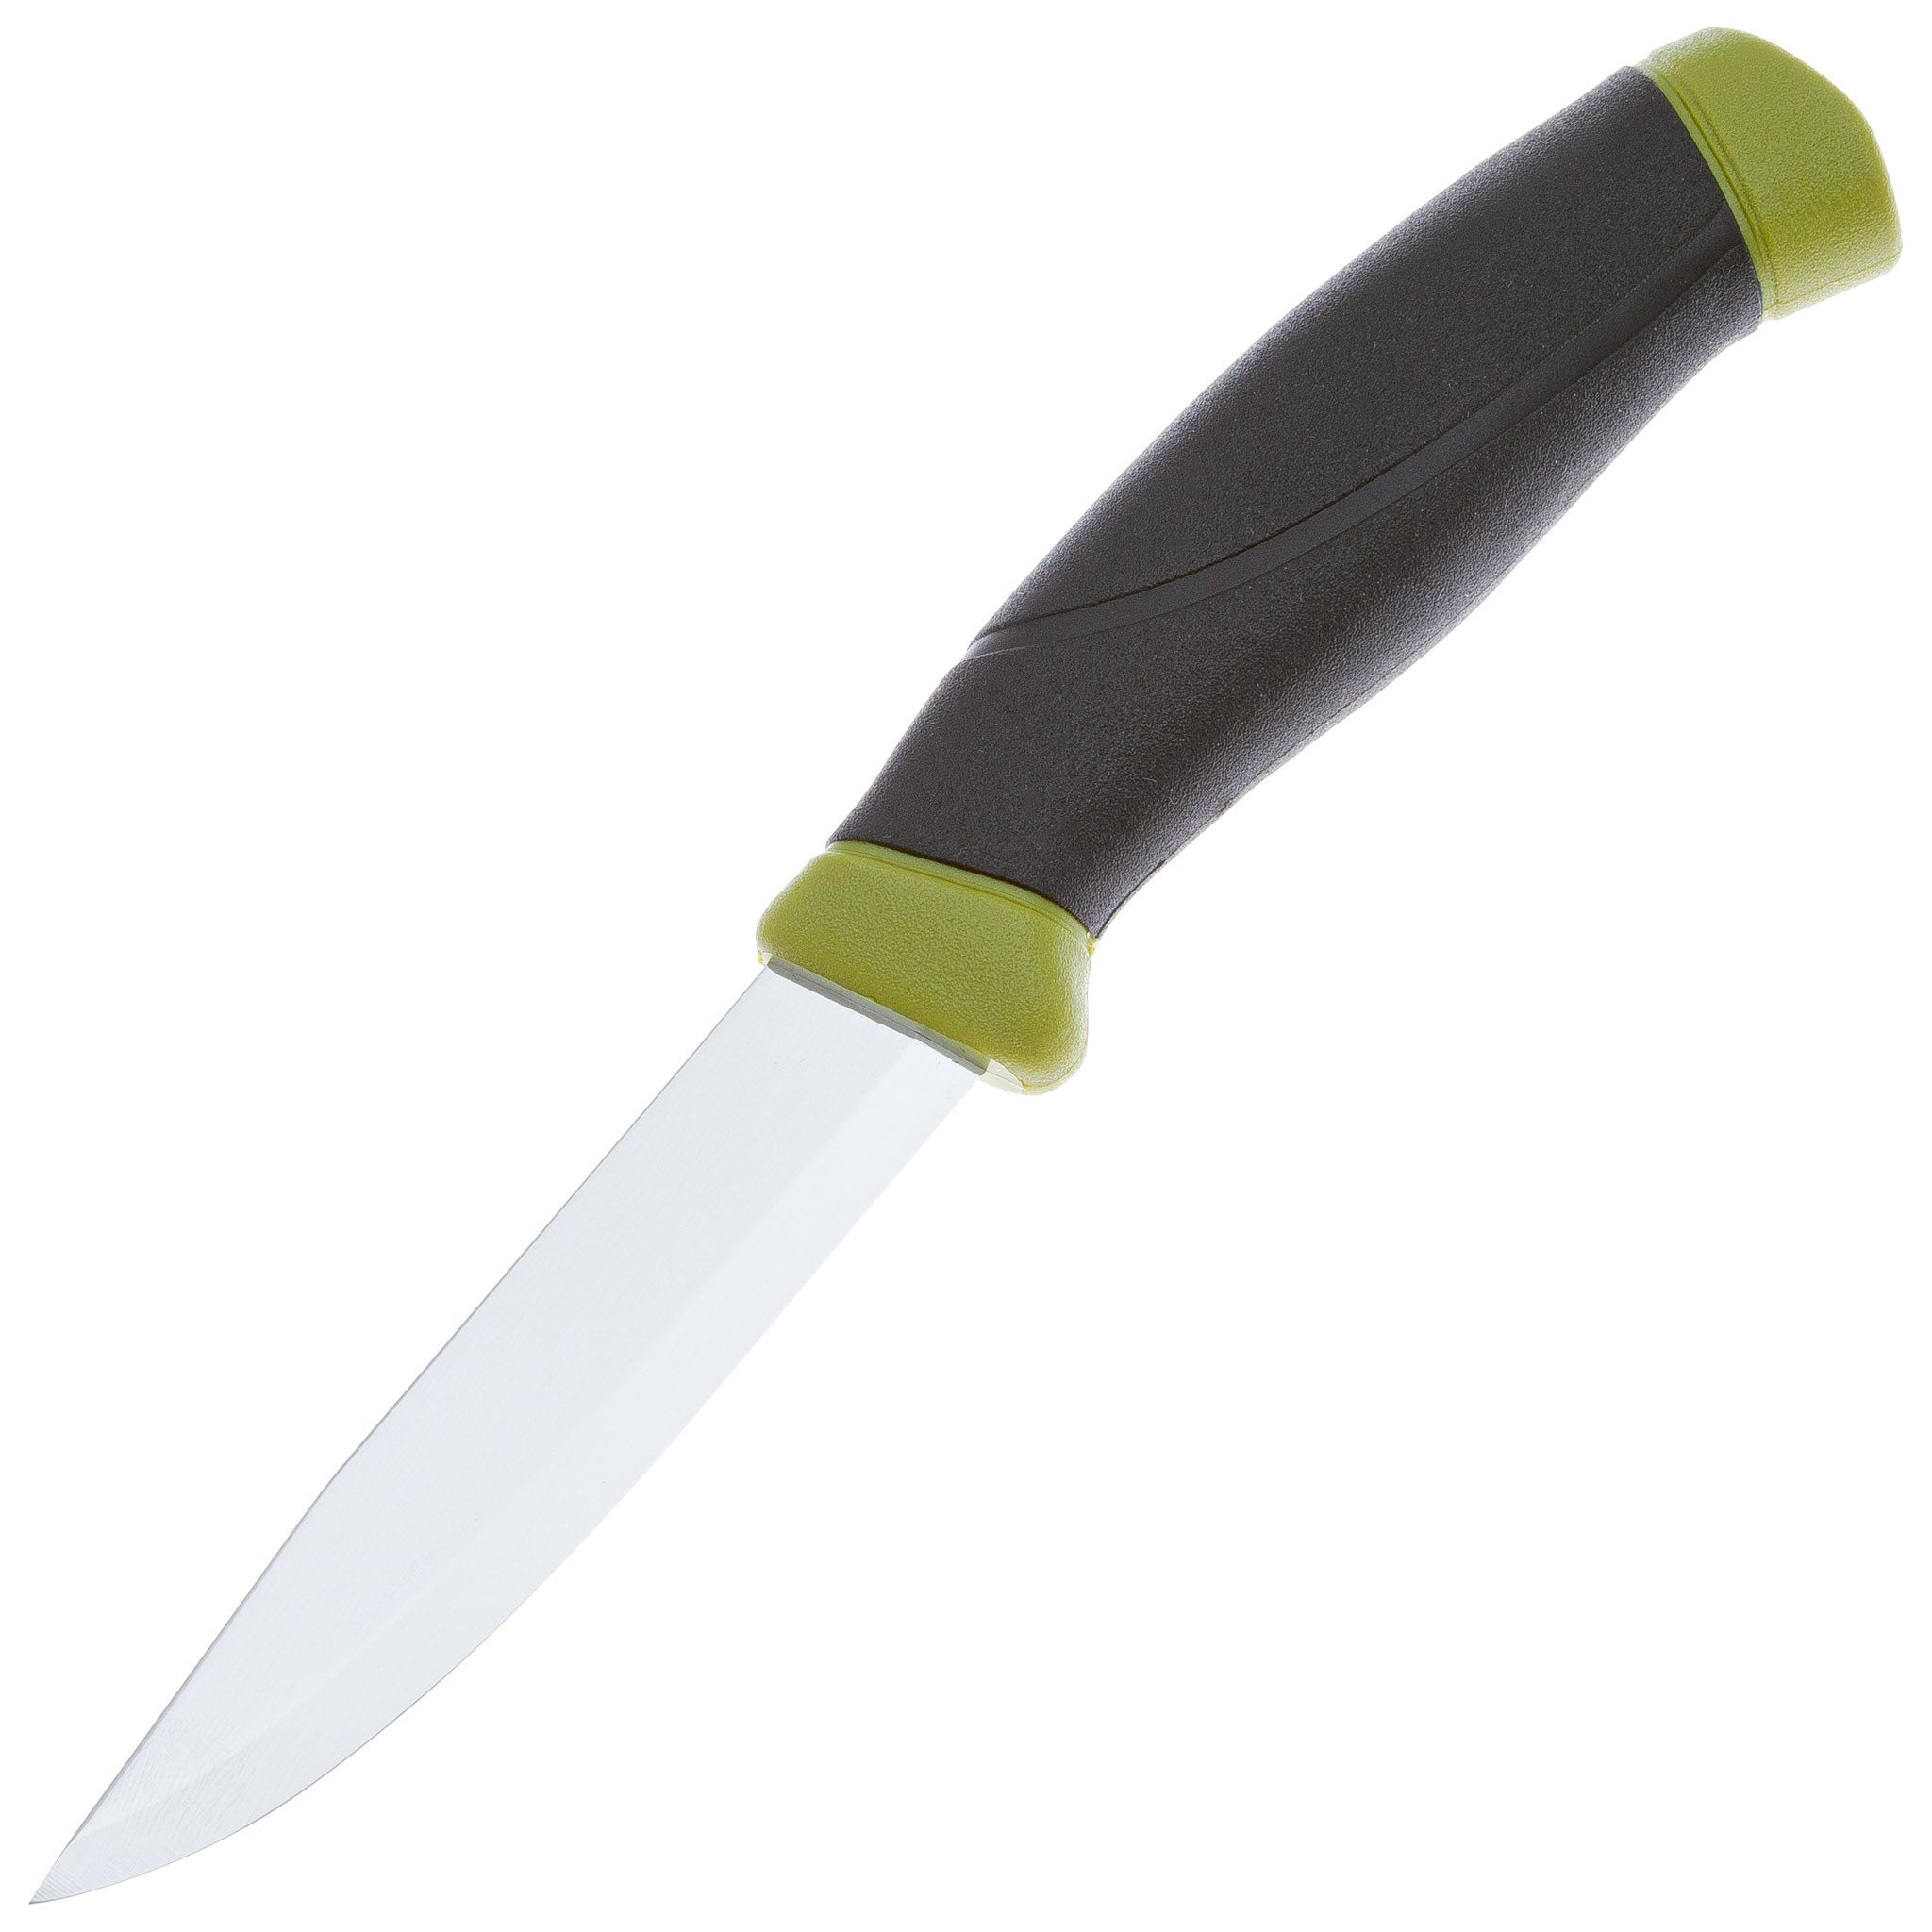 Нож с фиксированным лезвием Morakniv Companion, сталь Sandvik 12C27, рукоять резина, olive green